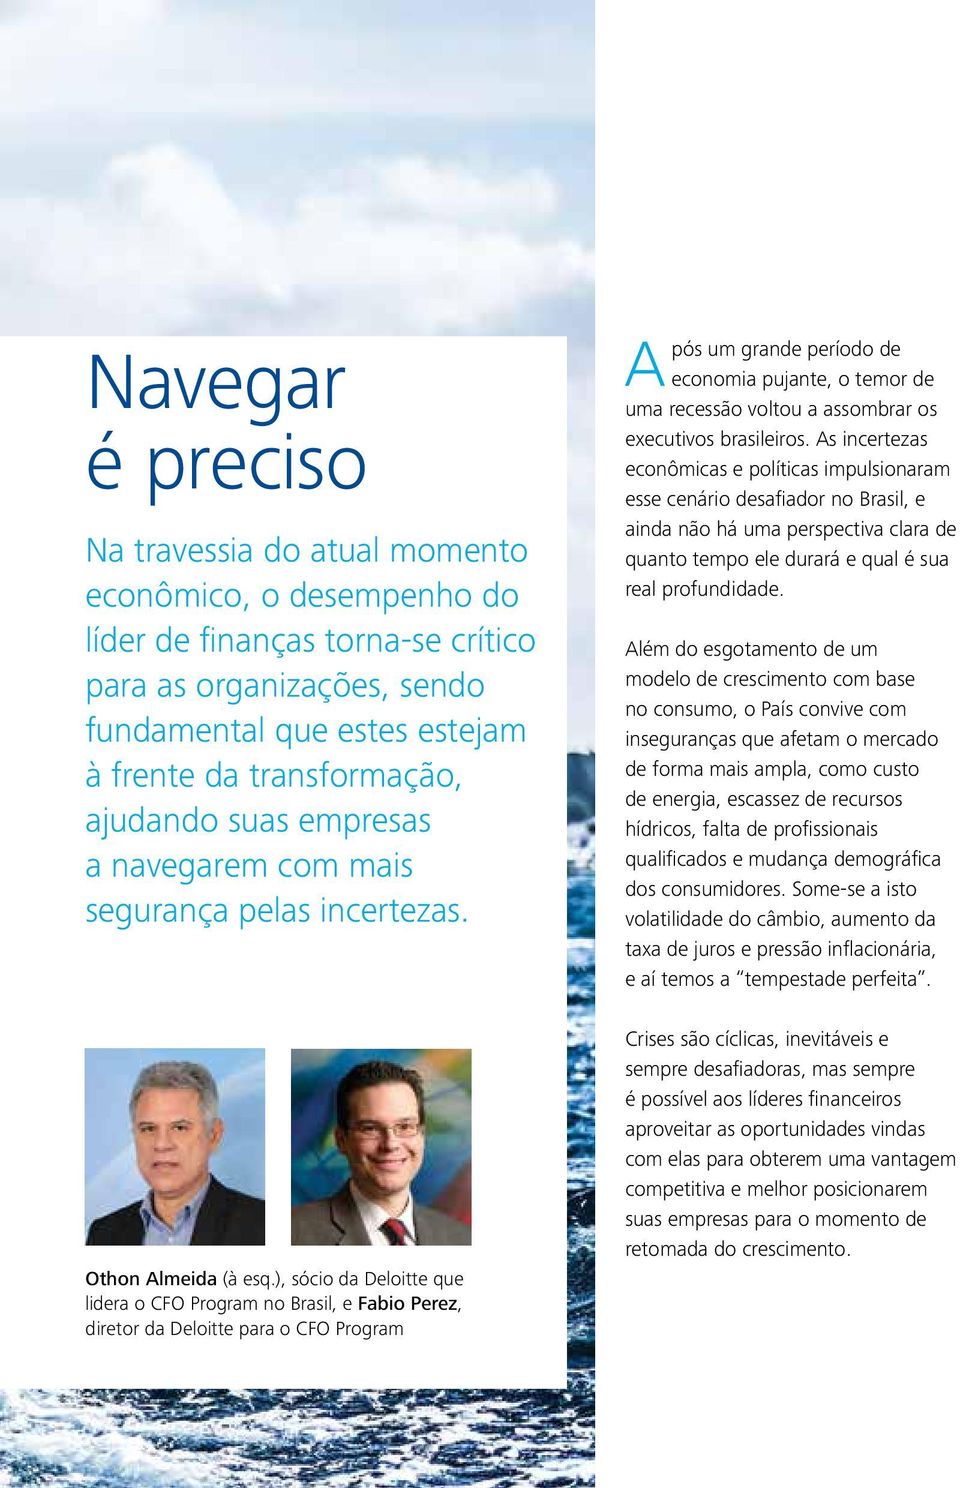 ), sócio da Deloitte que lidera o CFO Program no Brasil, e Fabio Perez, diretor da Deloitte para o CFO Program Após um grande período de economia pujante, o temor de uma recessão voltou a assombrar